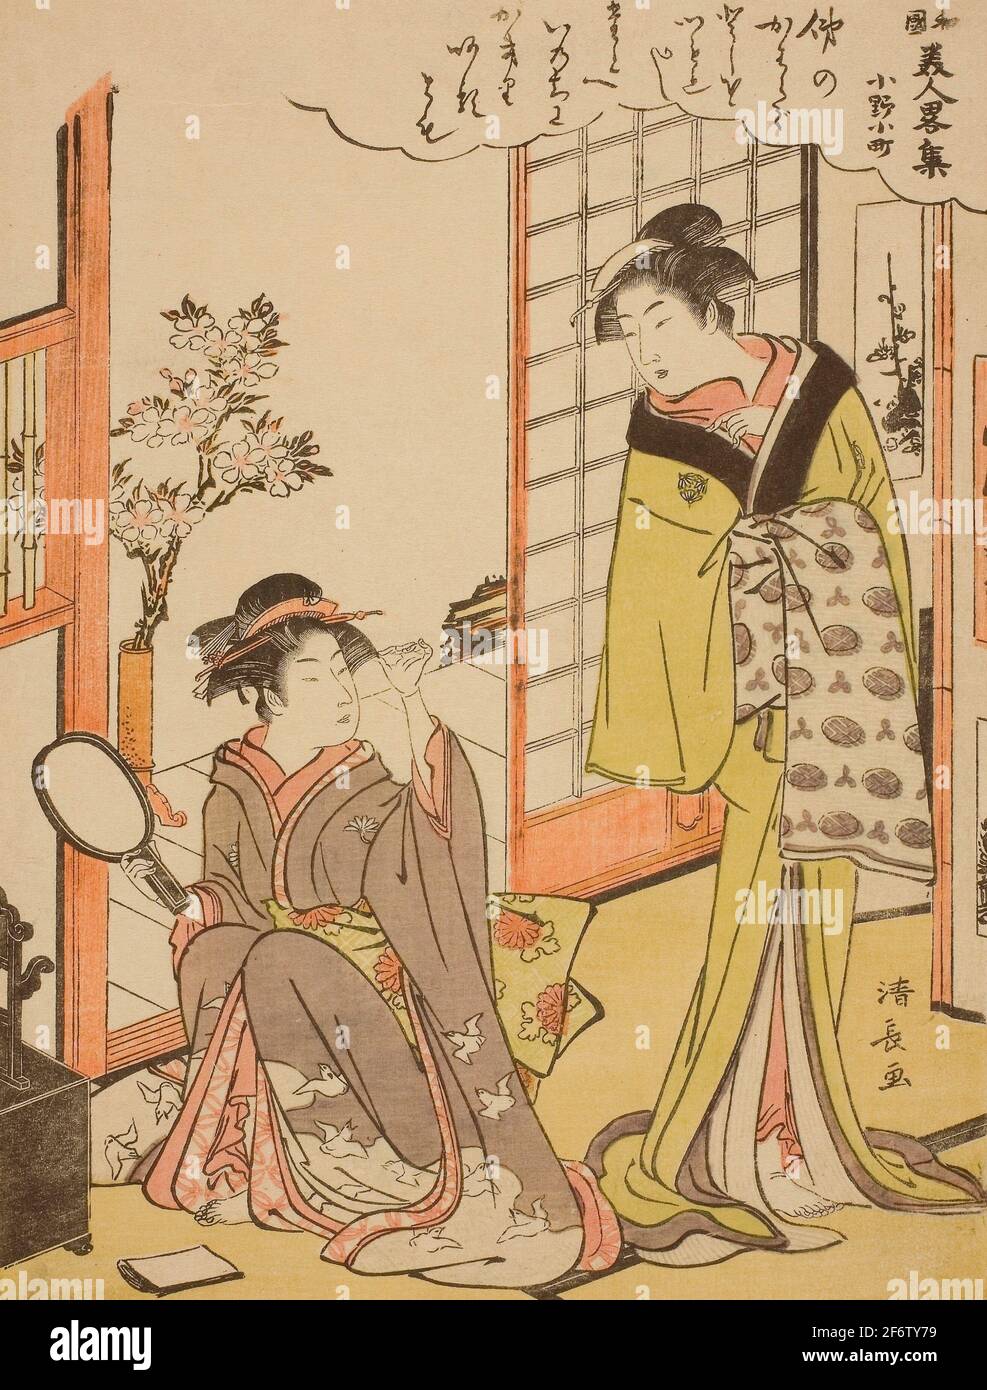 Author: Torii Kiyonaga. Ono no Komachi, from the series A Collection of Fashionable Beauties of Japan (Wakoku bijin ryaku shu) - Edo period Stock Photo